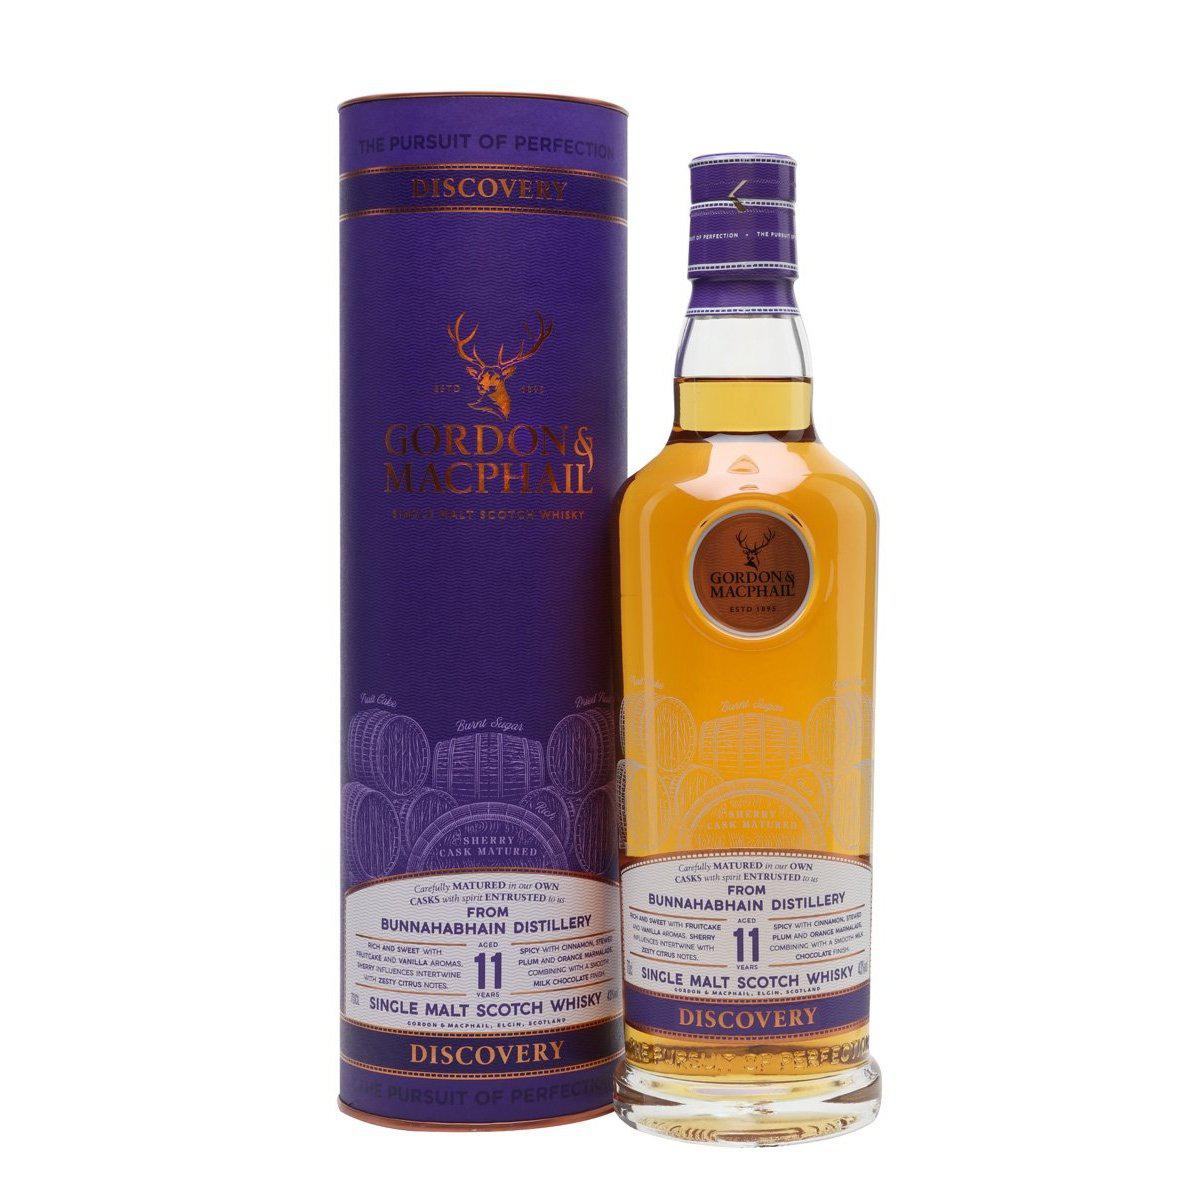 Gordon & Macphail Discovery Bunnahabhain 11 Year Old Single Malt Scotch Whisky 700ml